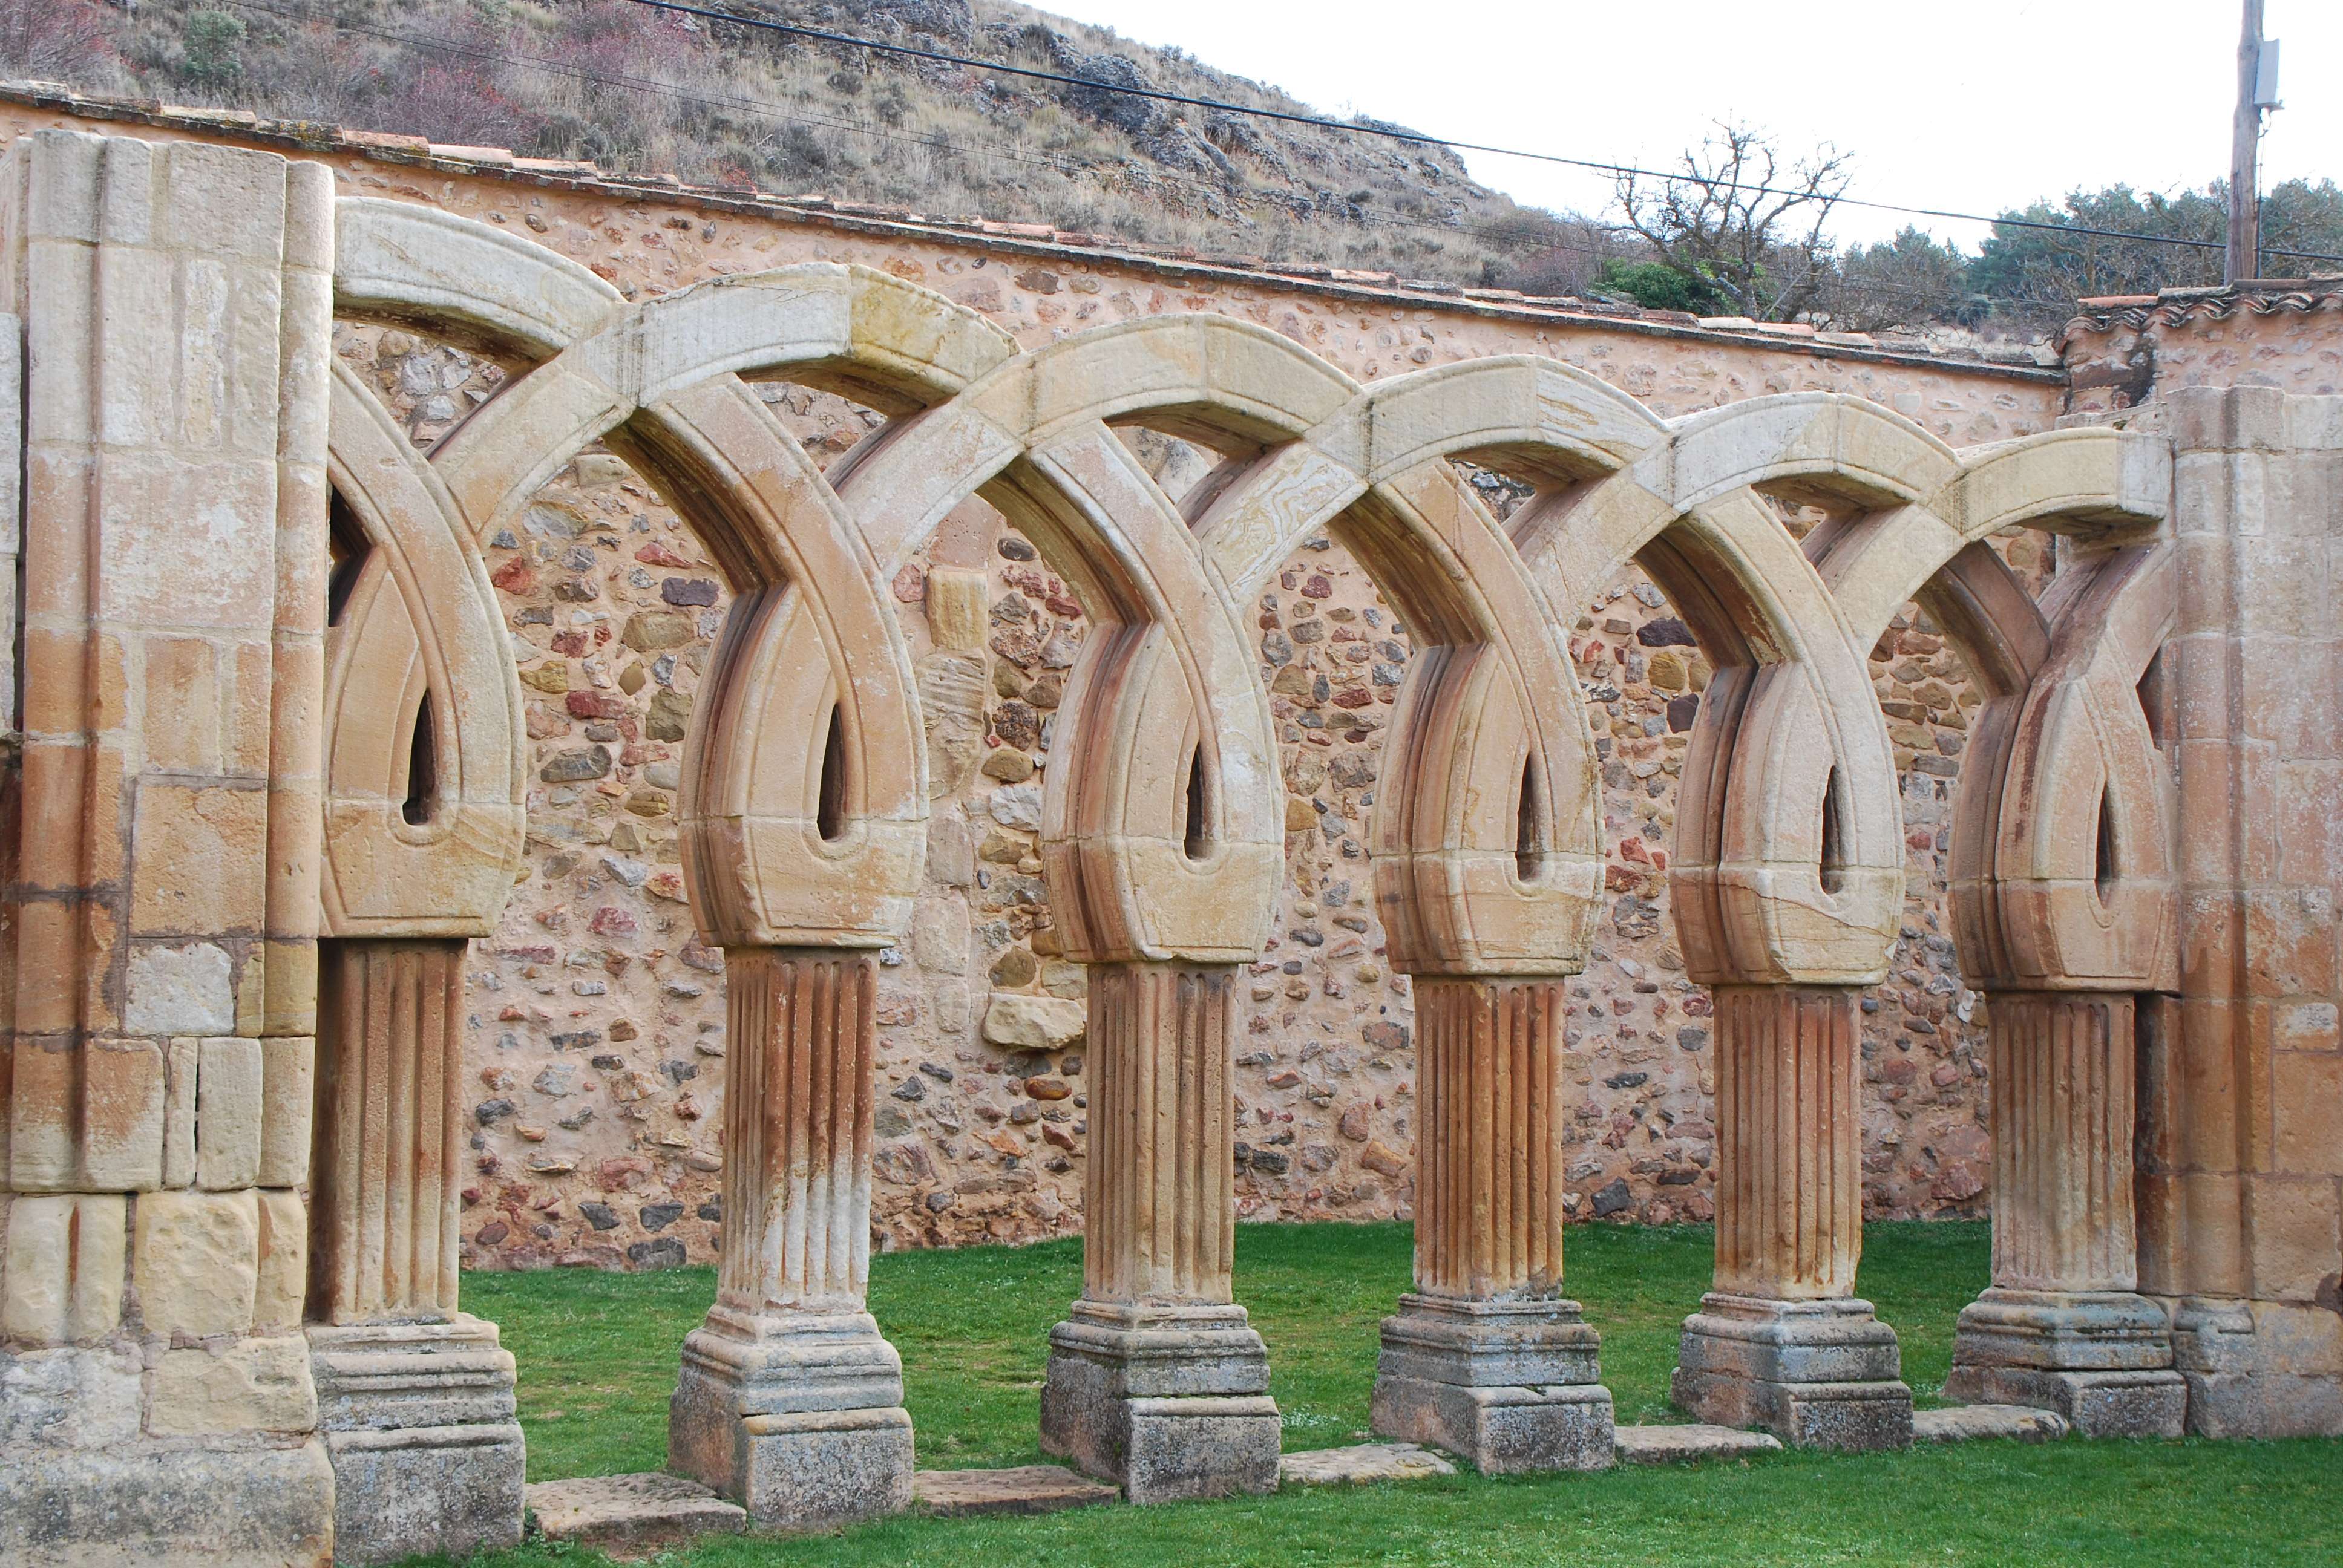 Monasterio de San Juan de Duero. Un enigma - Blogs de España - Monasterio de San Juan de Duero (9)